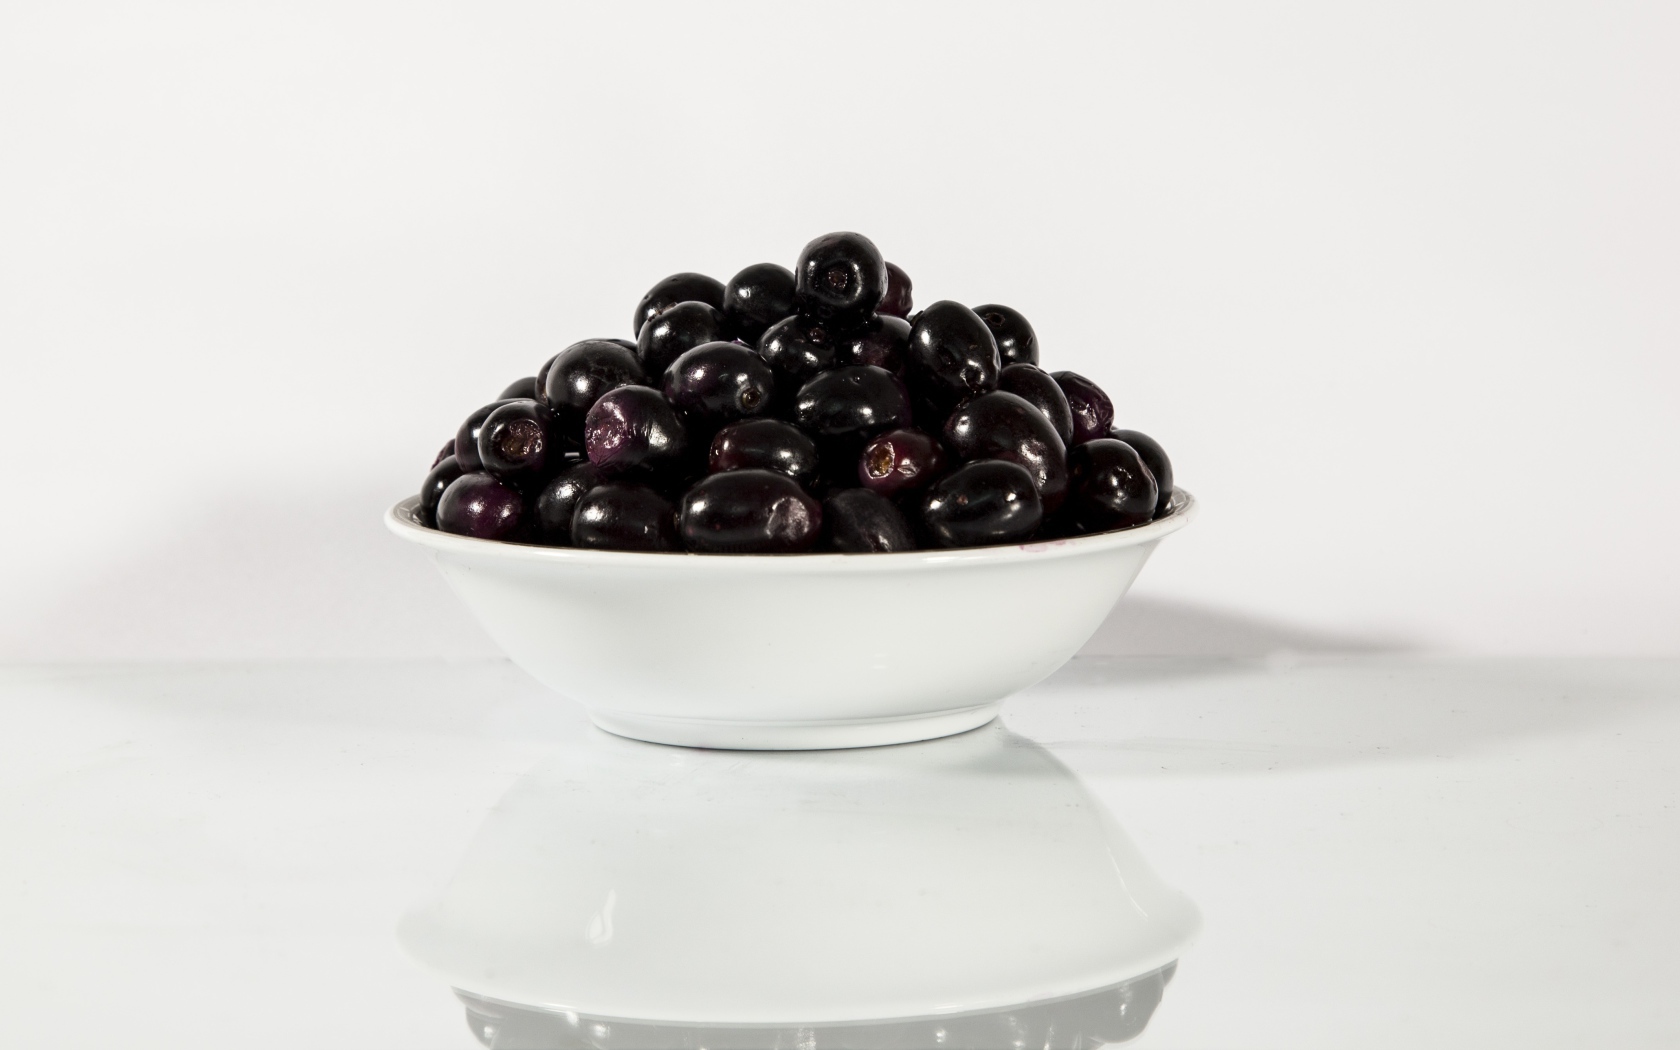 Черные оливки в белой тарелке отражаются в поверхности